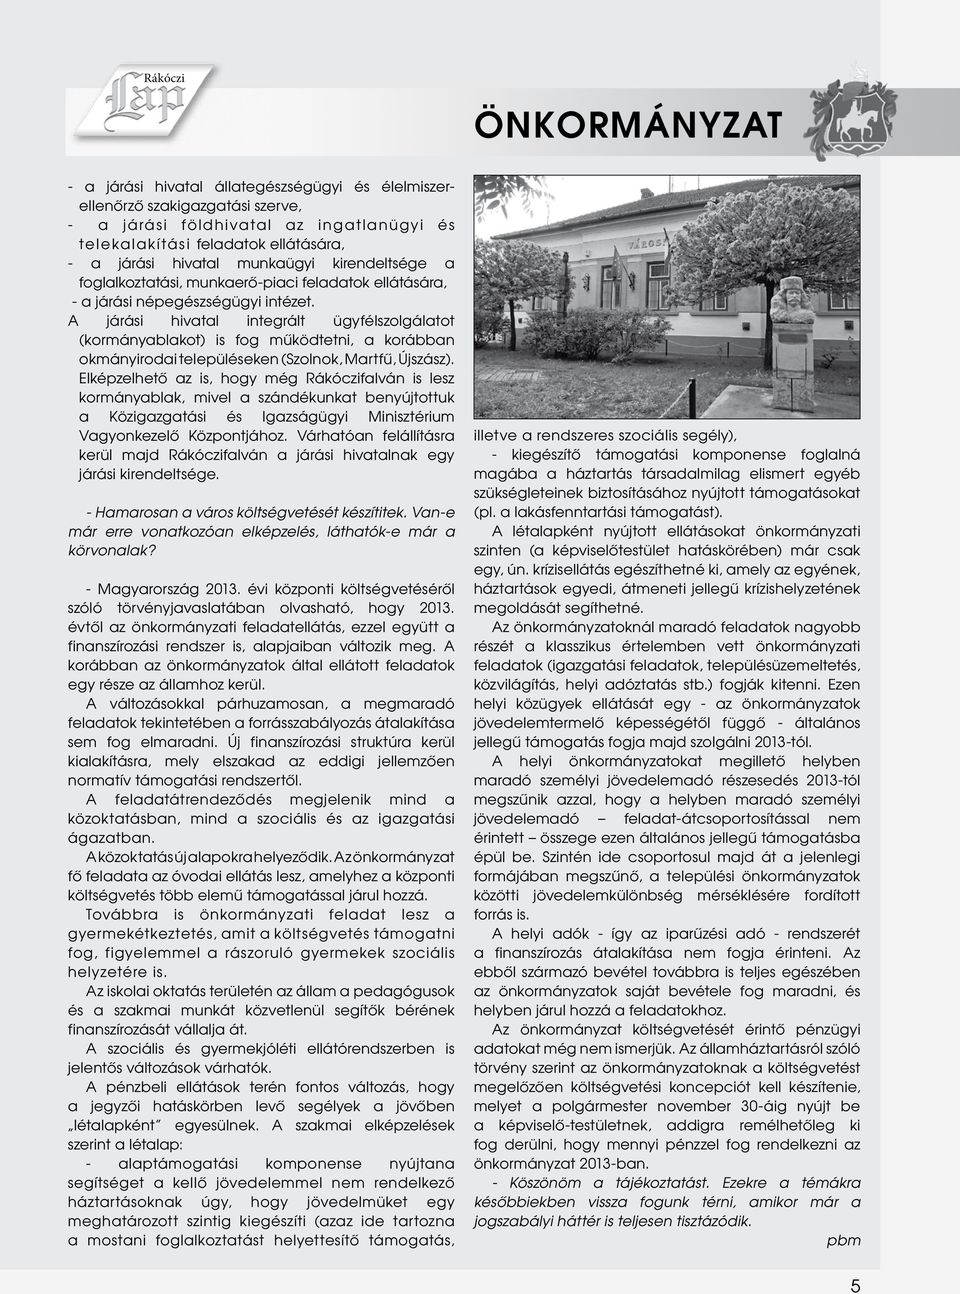 A járási hivatal integrált ügyfélszolgálatot (kormányablakot) is fog működtetni, a korábban okmányirodai településeken (Szolnok, Martfű, Újszász).